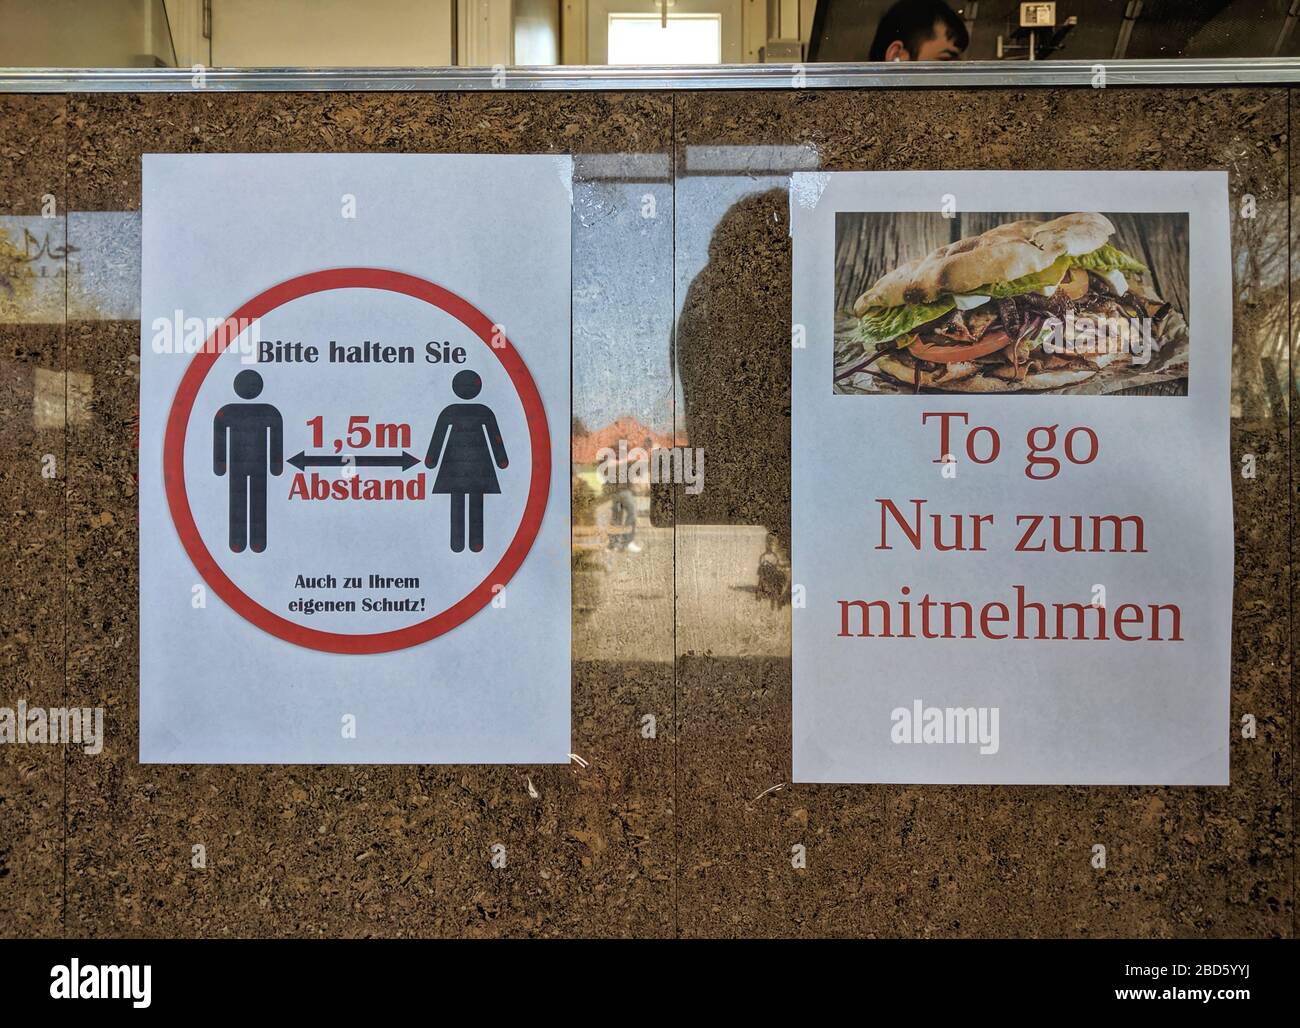 Monaco, Germania. 7 aprile 2020. Un cartello in un ristorante Doener Kebab a Monaco, in Germania, dove vengono applicate 1.5m di distanza e gli ordini vanno solo. Credit: ZUMA Press, Inc./Alamy Live News Foto Stock